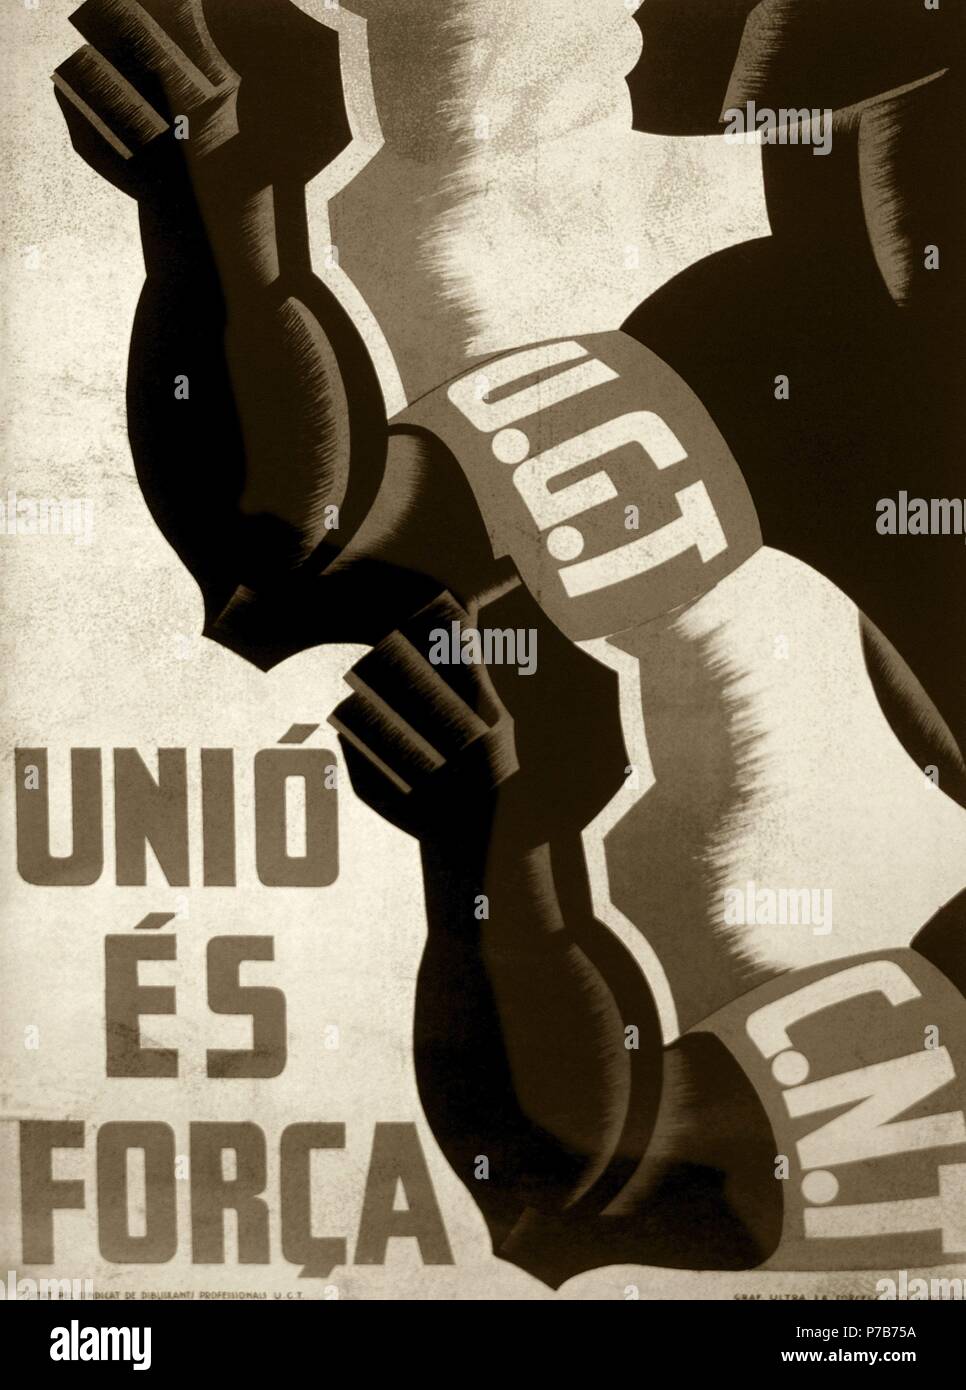 Guerre civile espagnole (1936-1939). L'affiche de propagande en catalan de la Force est de l'Union européenne sur l'accord entre l'UGT (Union Générale des Travailleurs) et la CNT (Confédération nationale du travail), 1936. Banque D'Images